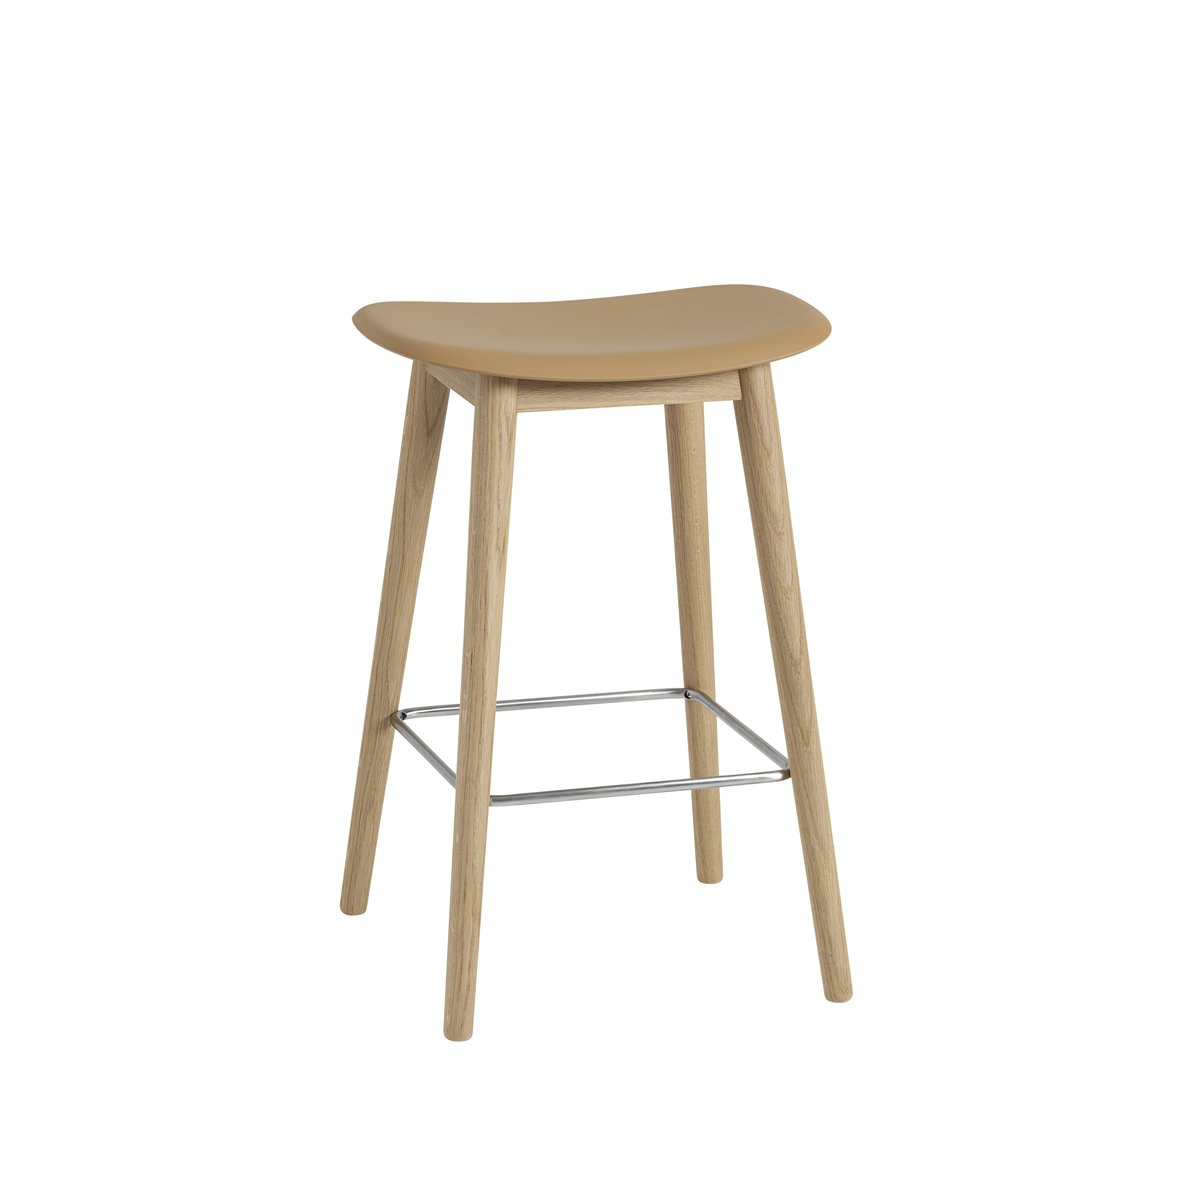 Bilde av Muuto Fiber counter stool 65 cm ochre eikeben